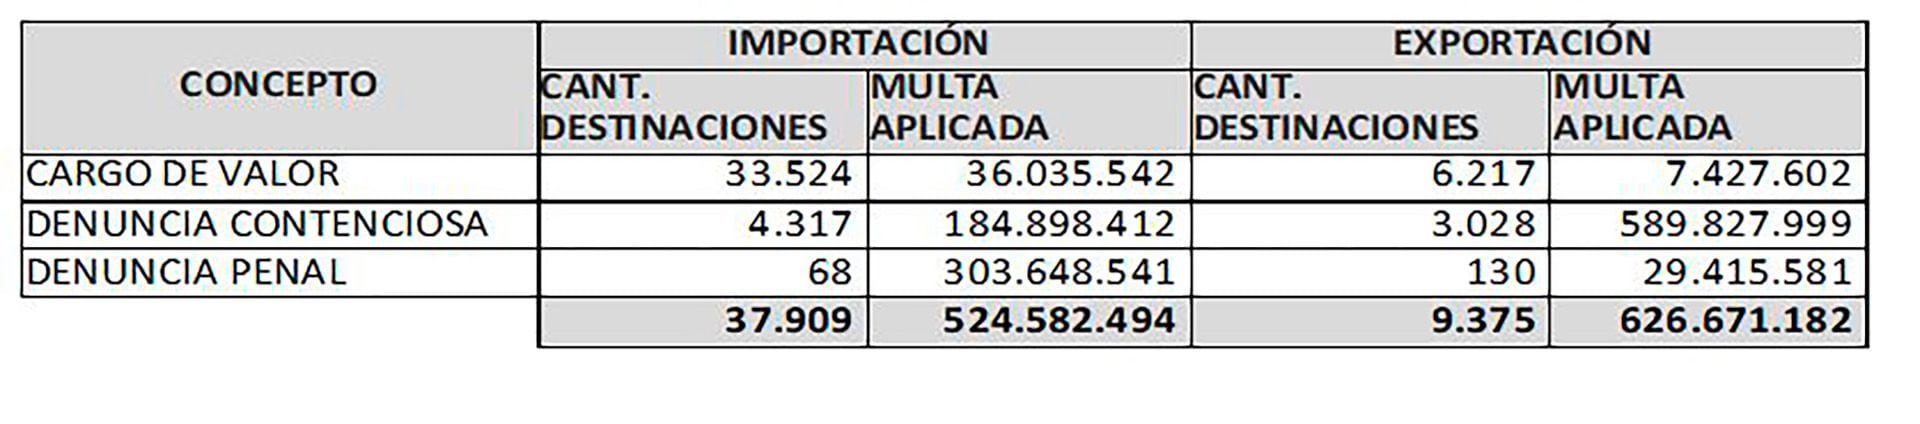 Un detalle de operaciones de fiscalización realizadas por la Aduana en 2022: casi 39.000 sobre importaciones y más de 9.000 sobre exportaciones